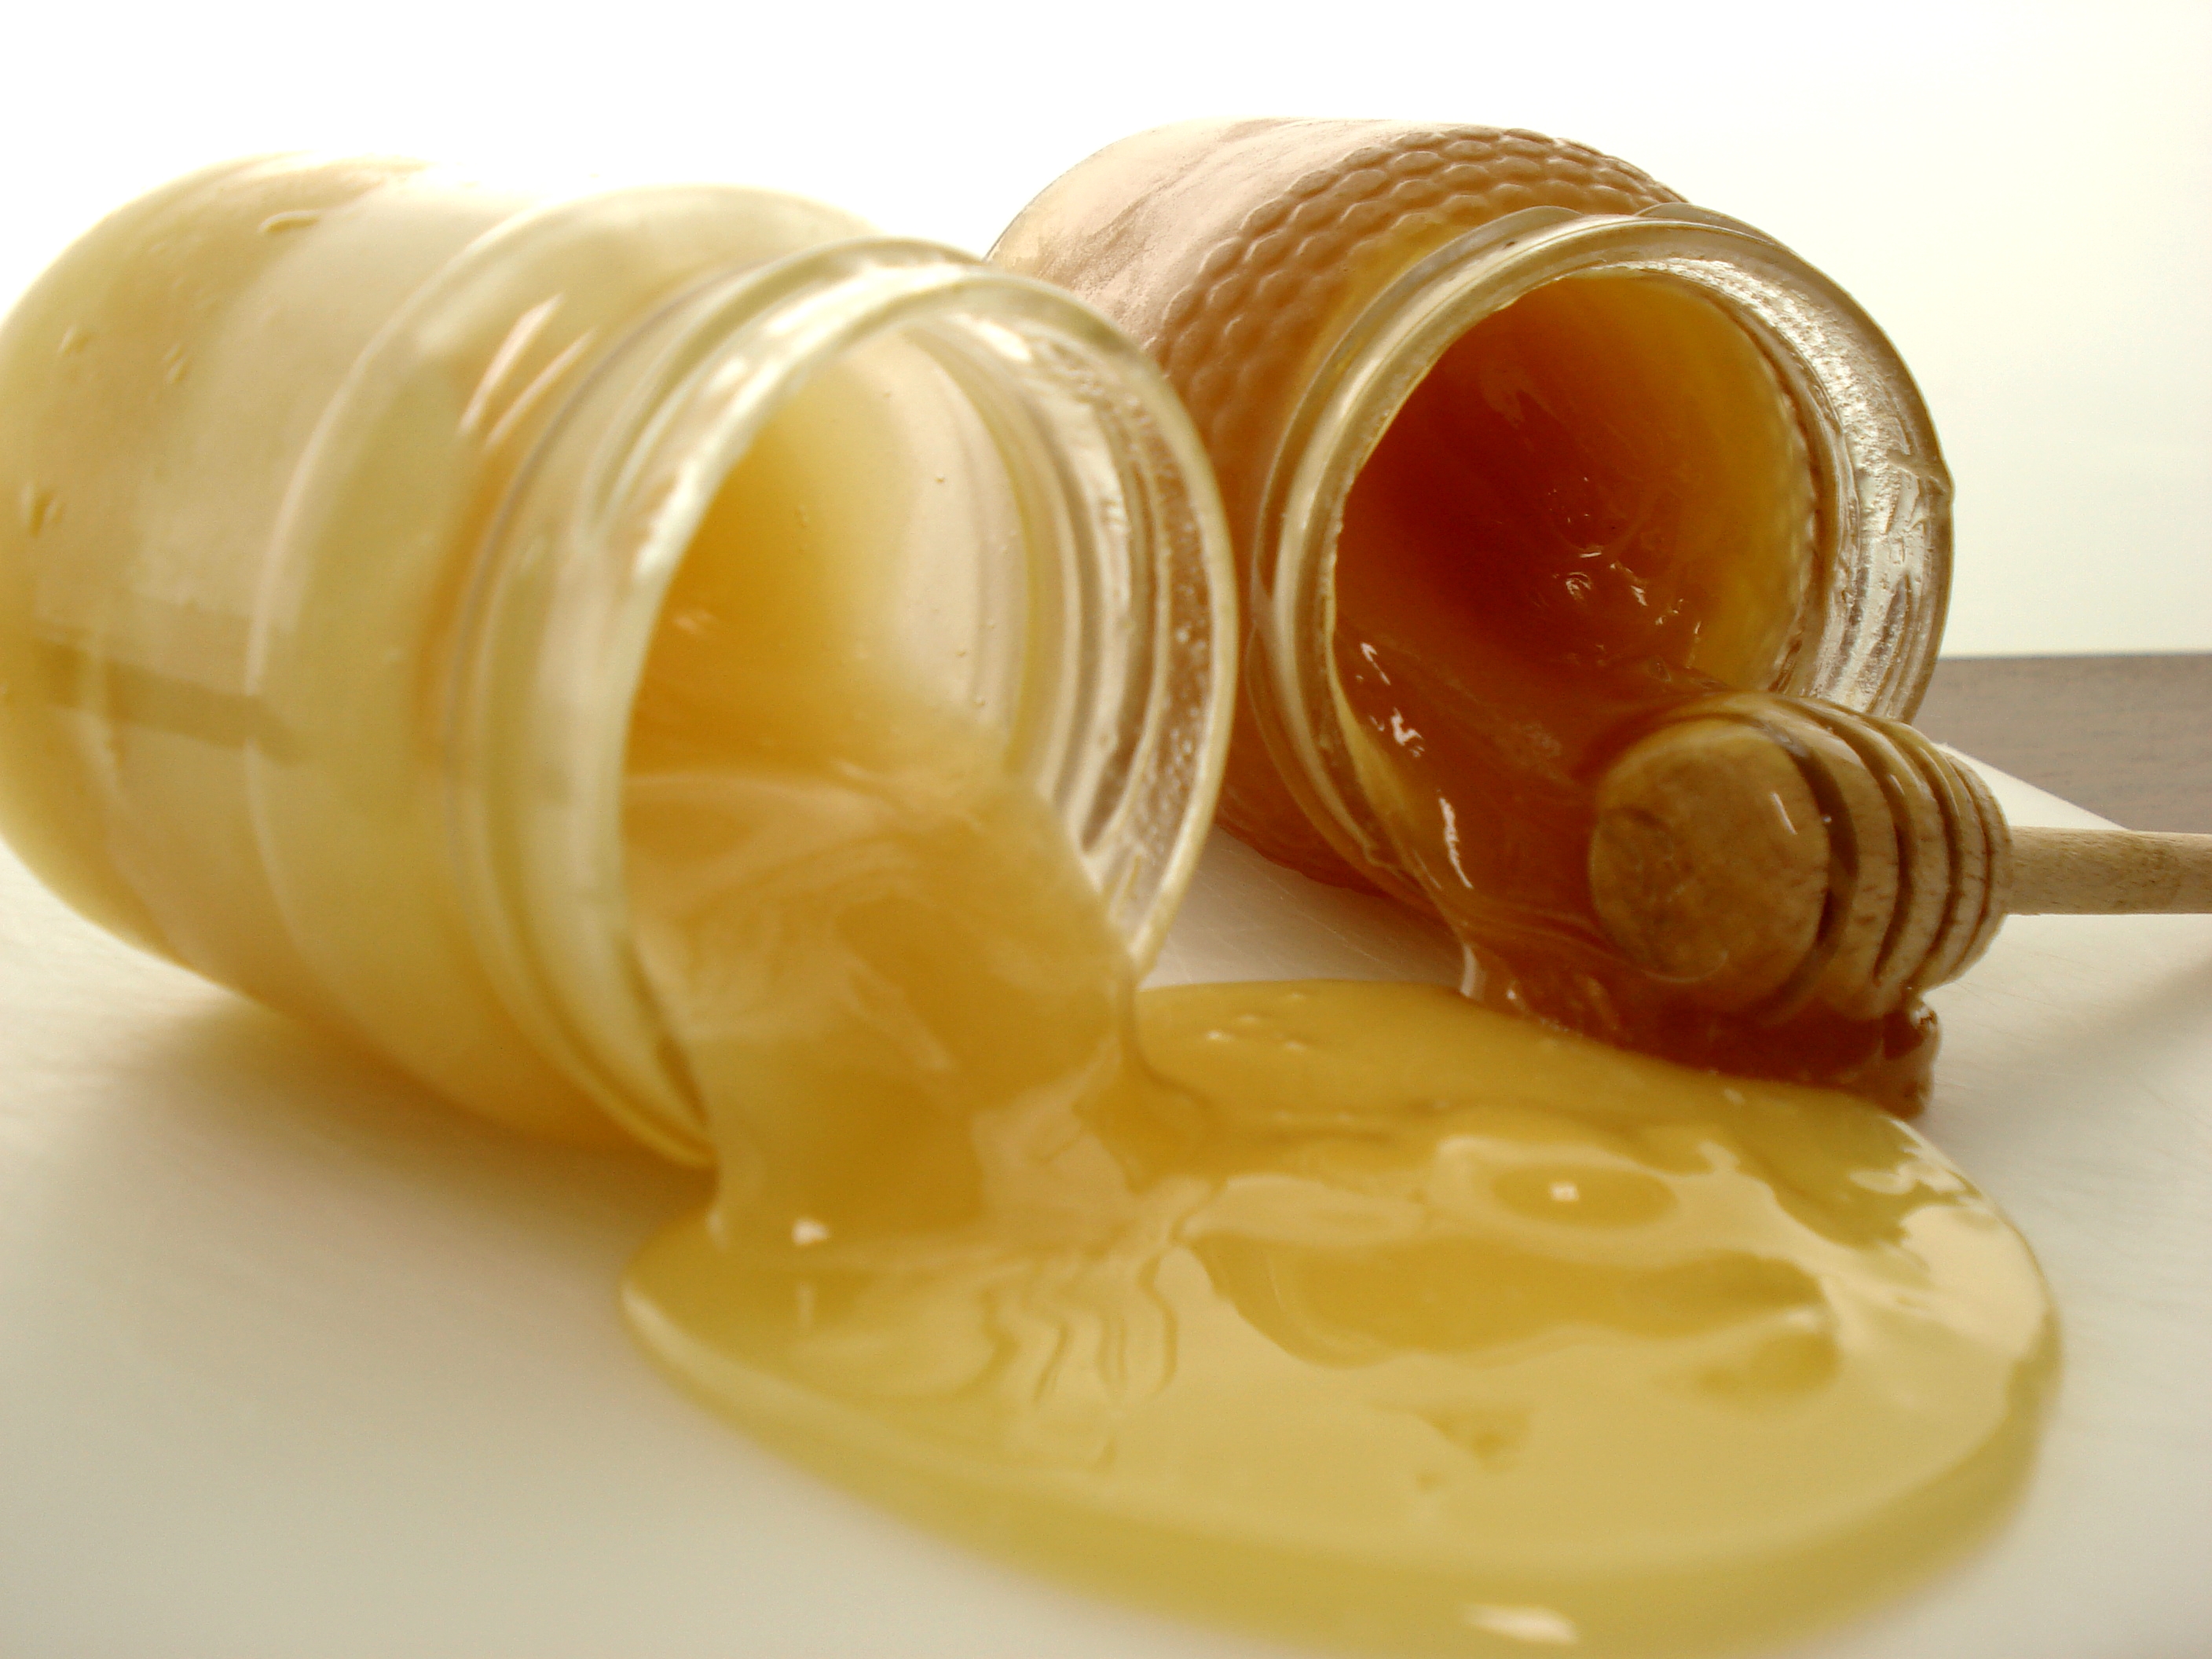 Сорта и виды мёда: названия, свойства, вкус и другие особенности